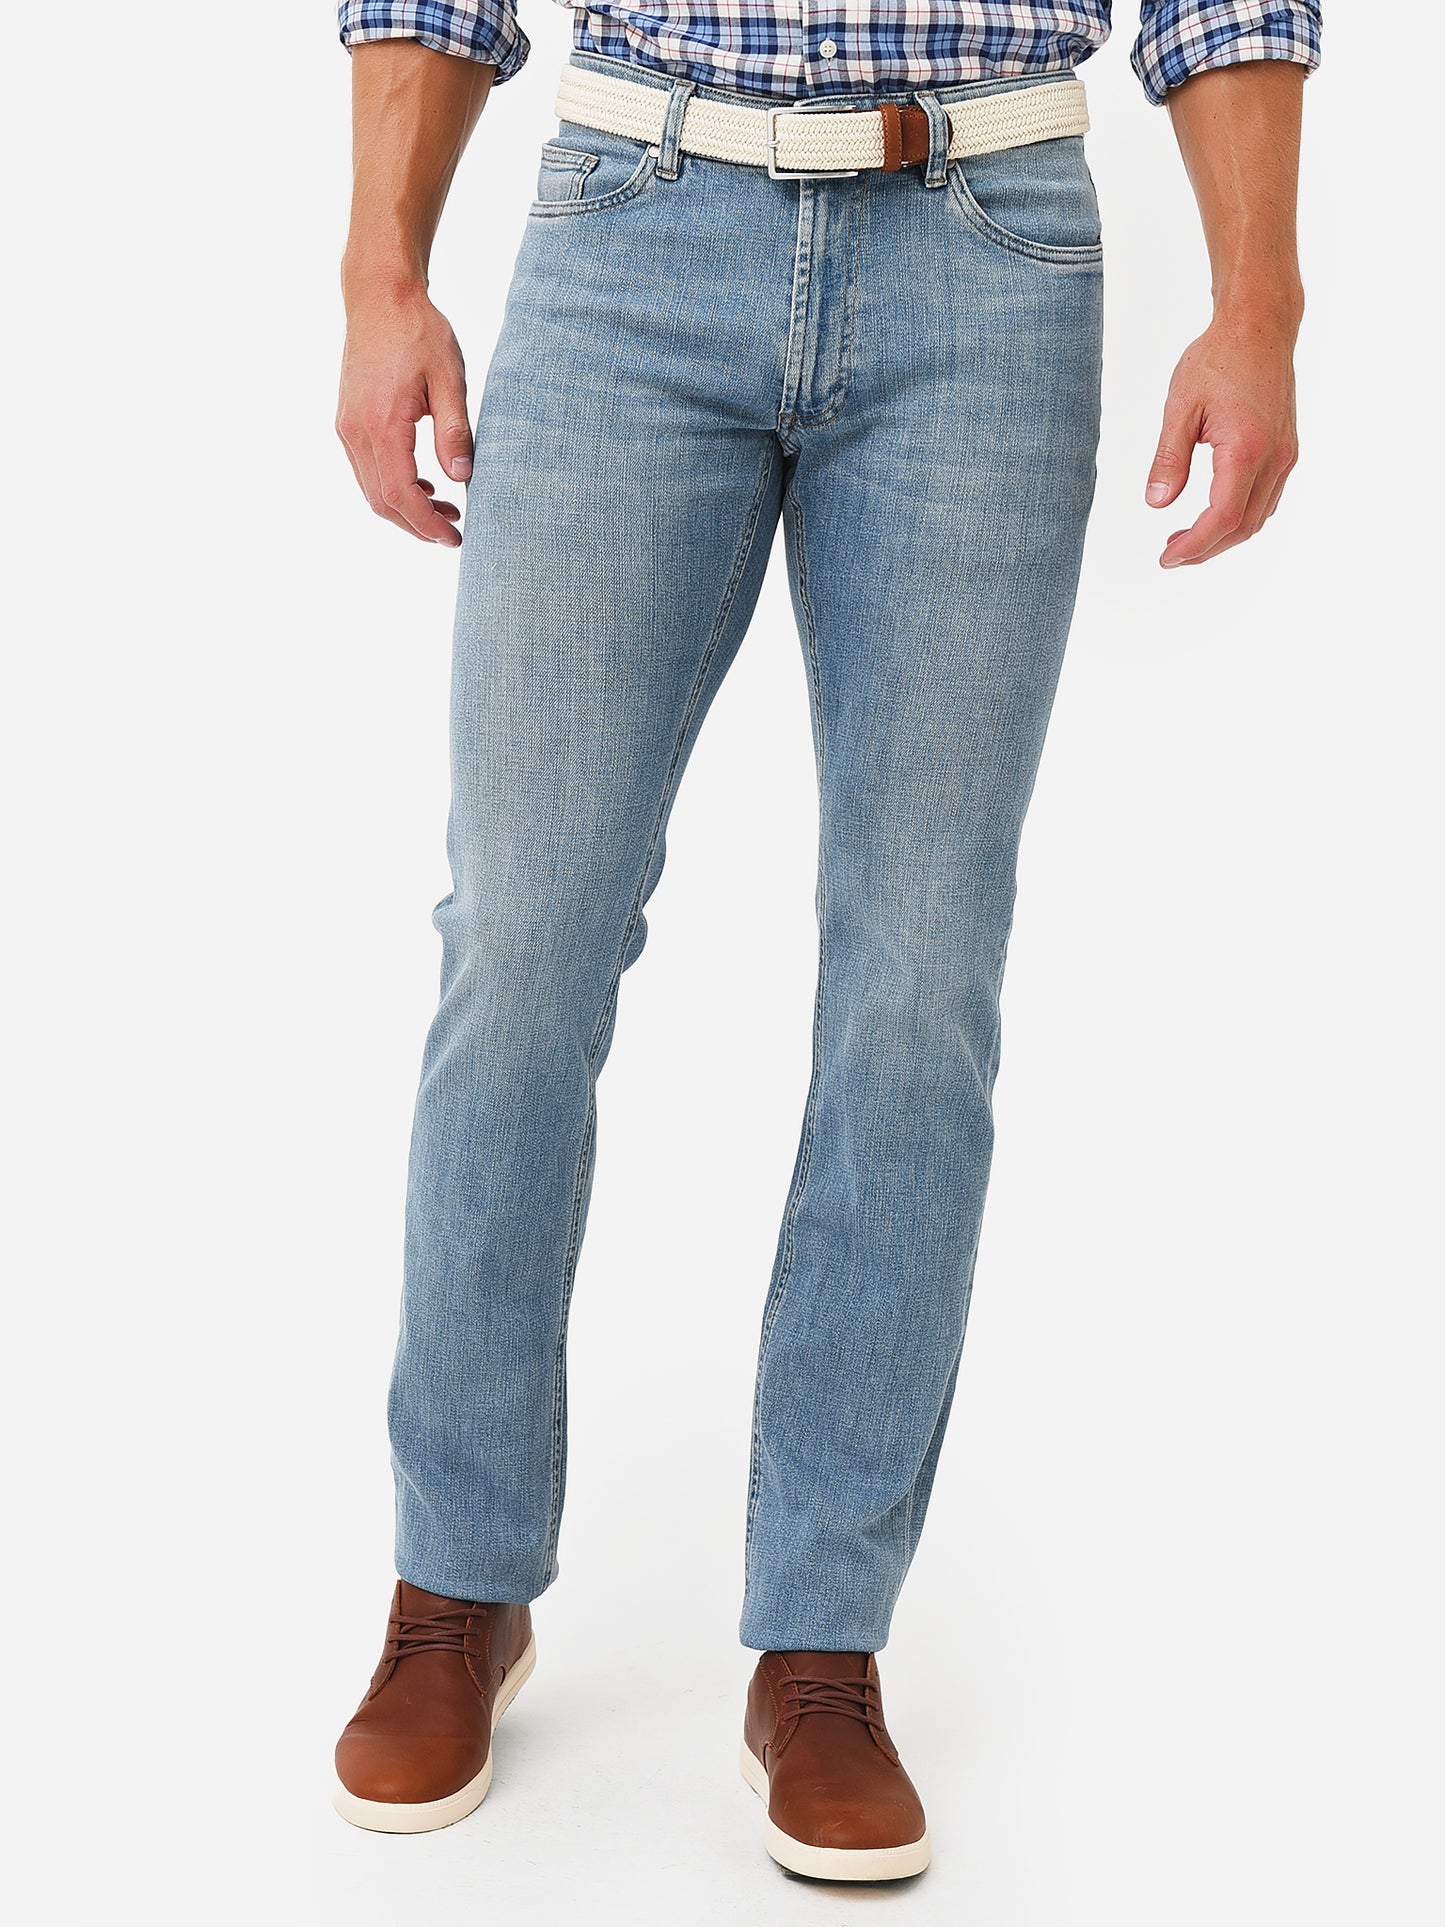 Peter Millar Collection Men's Vintage Washed 5-Pocket Denim Jean